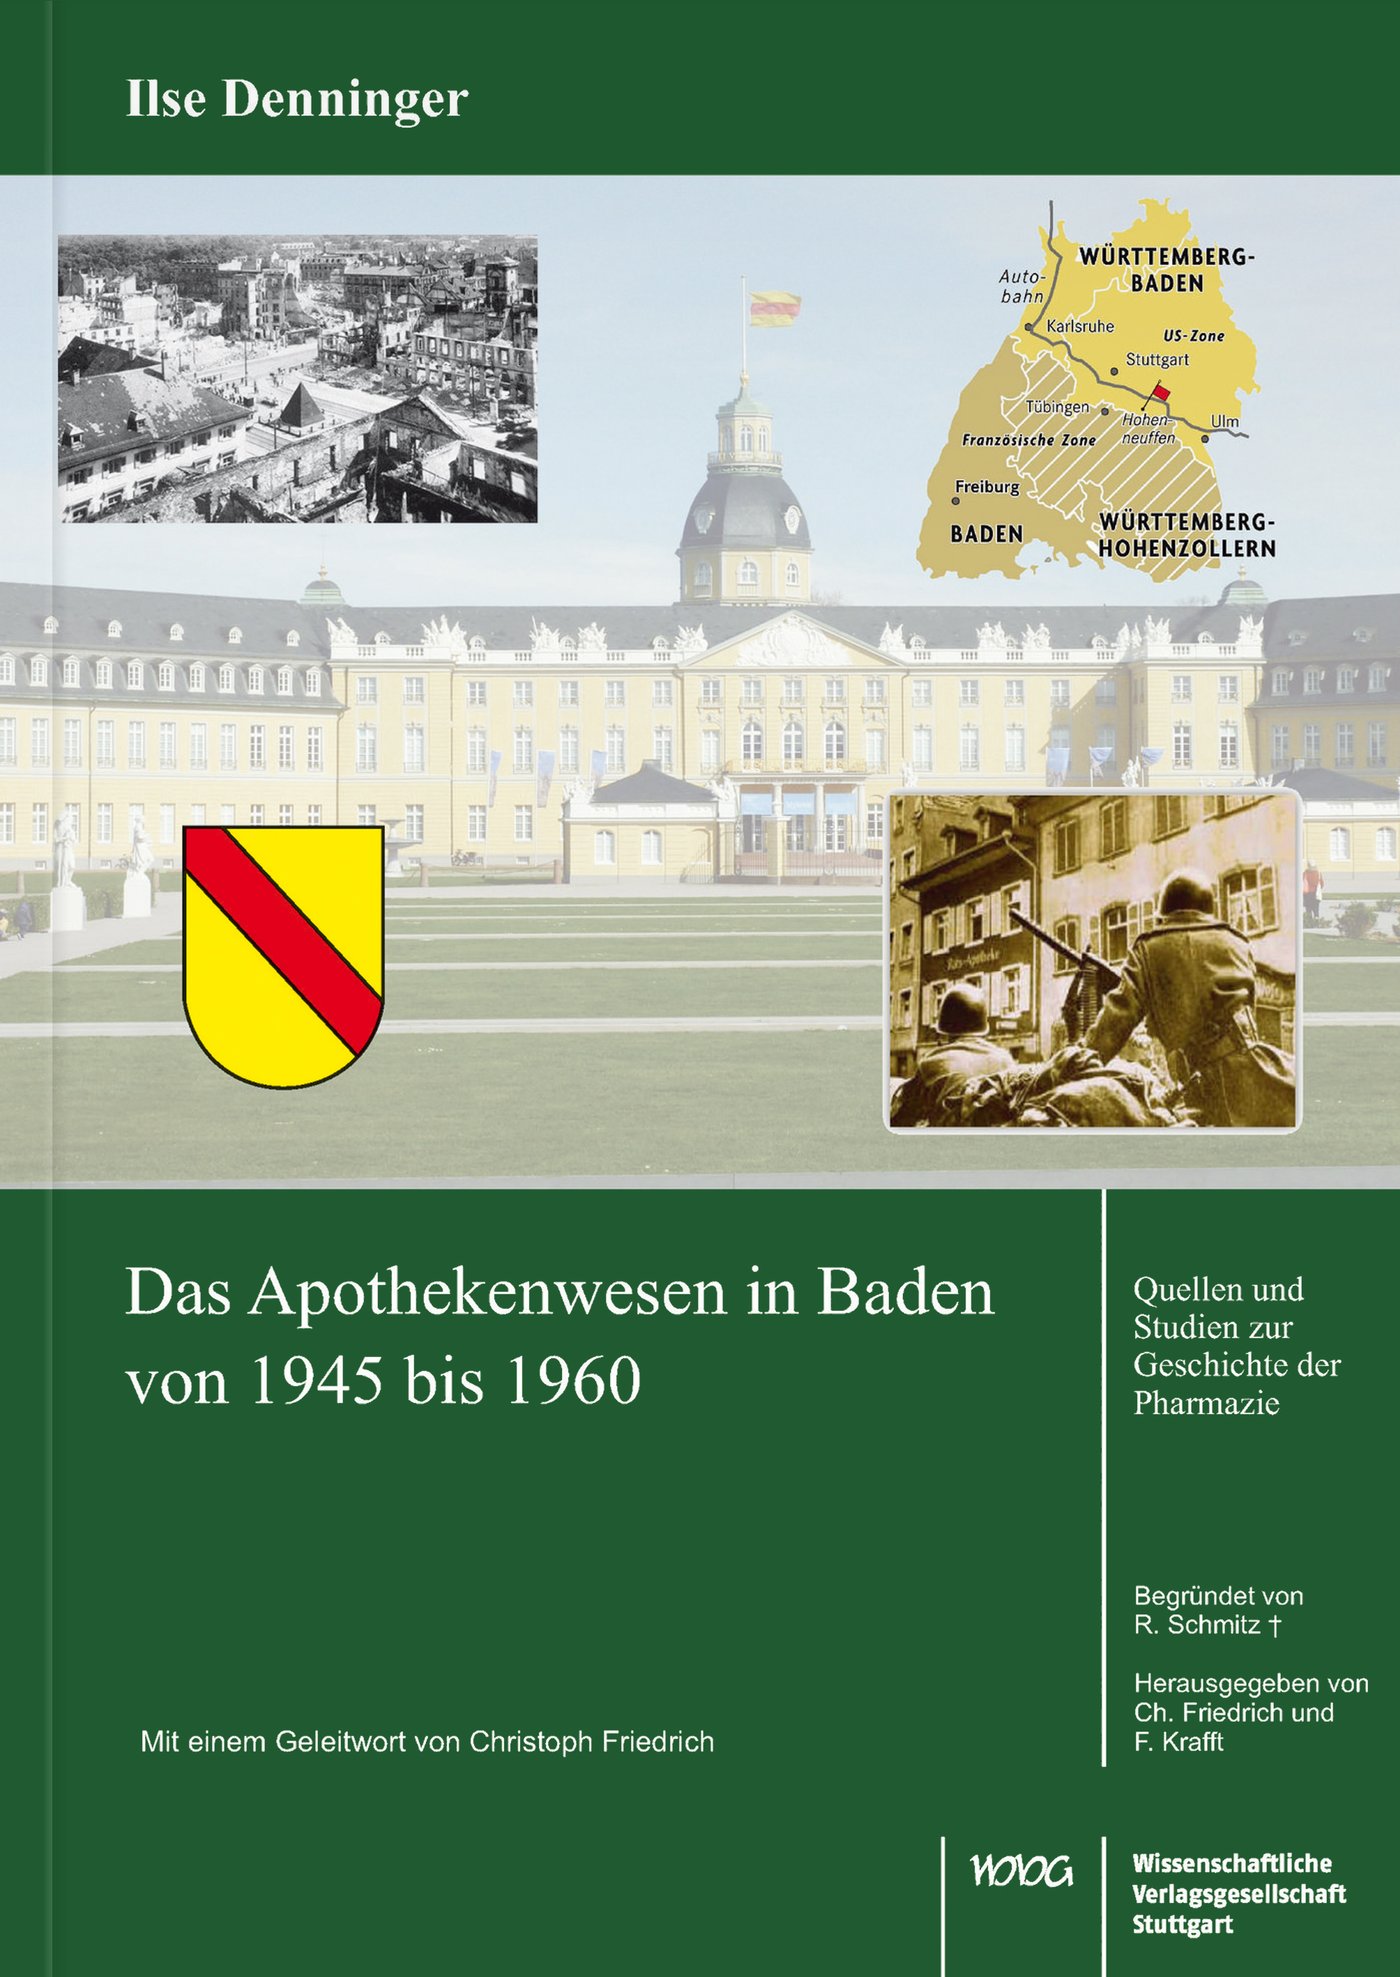 Das Apothekenwesen in Baden von 1945 bis 1961